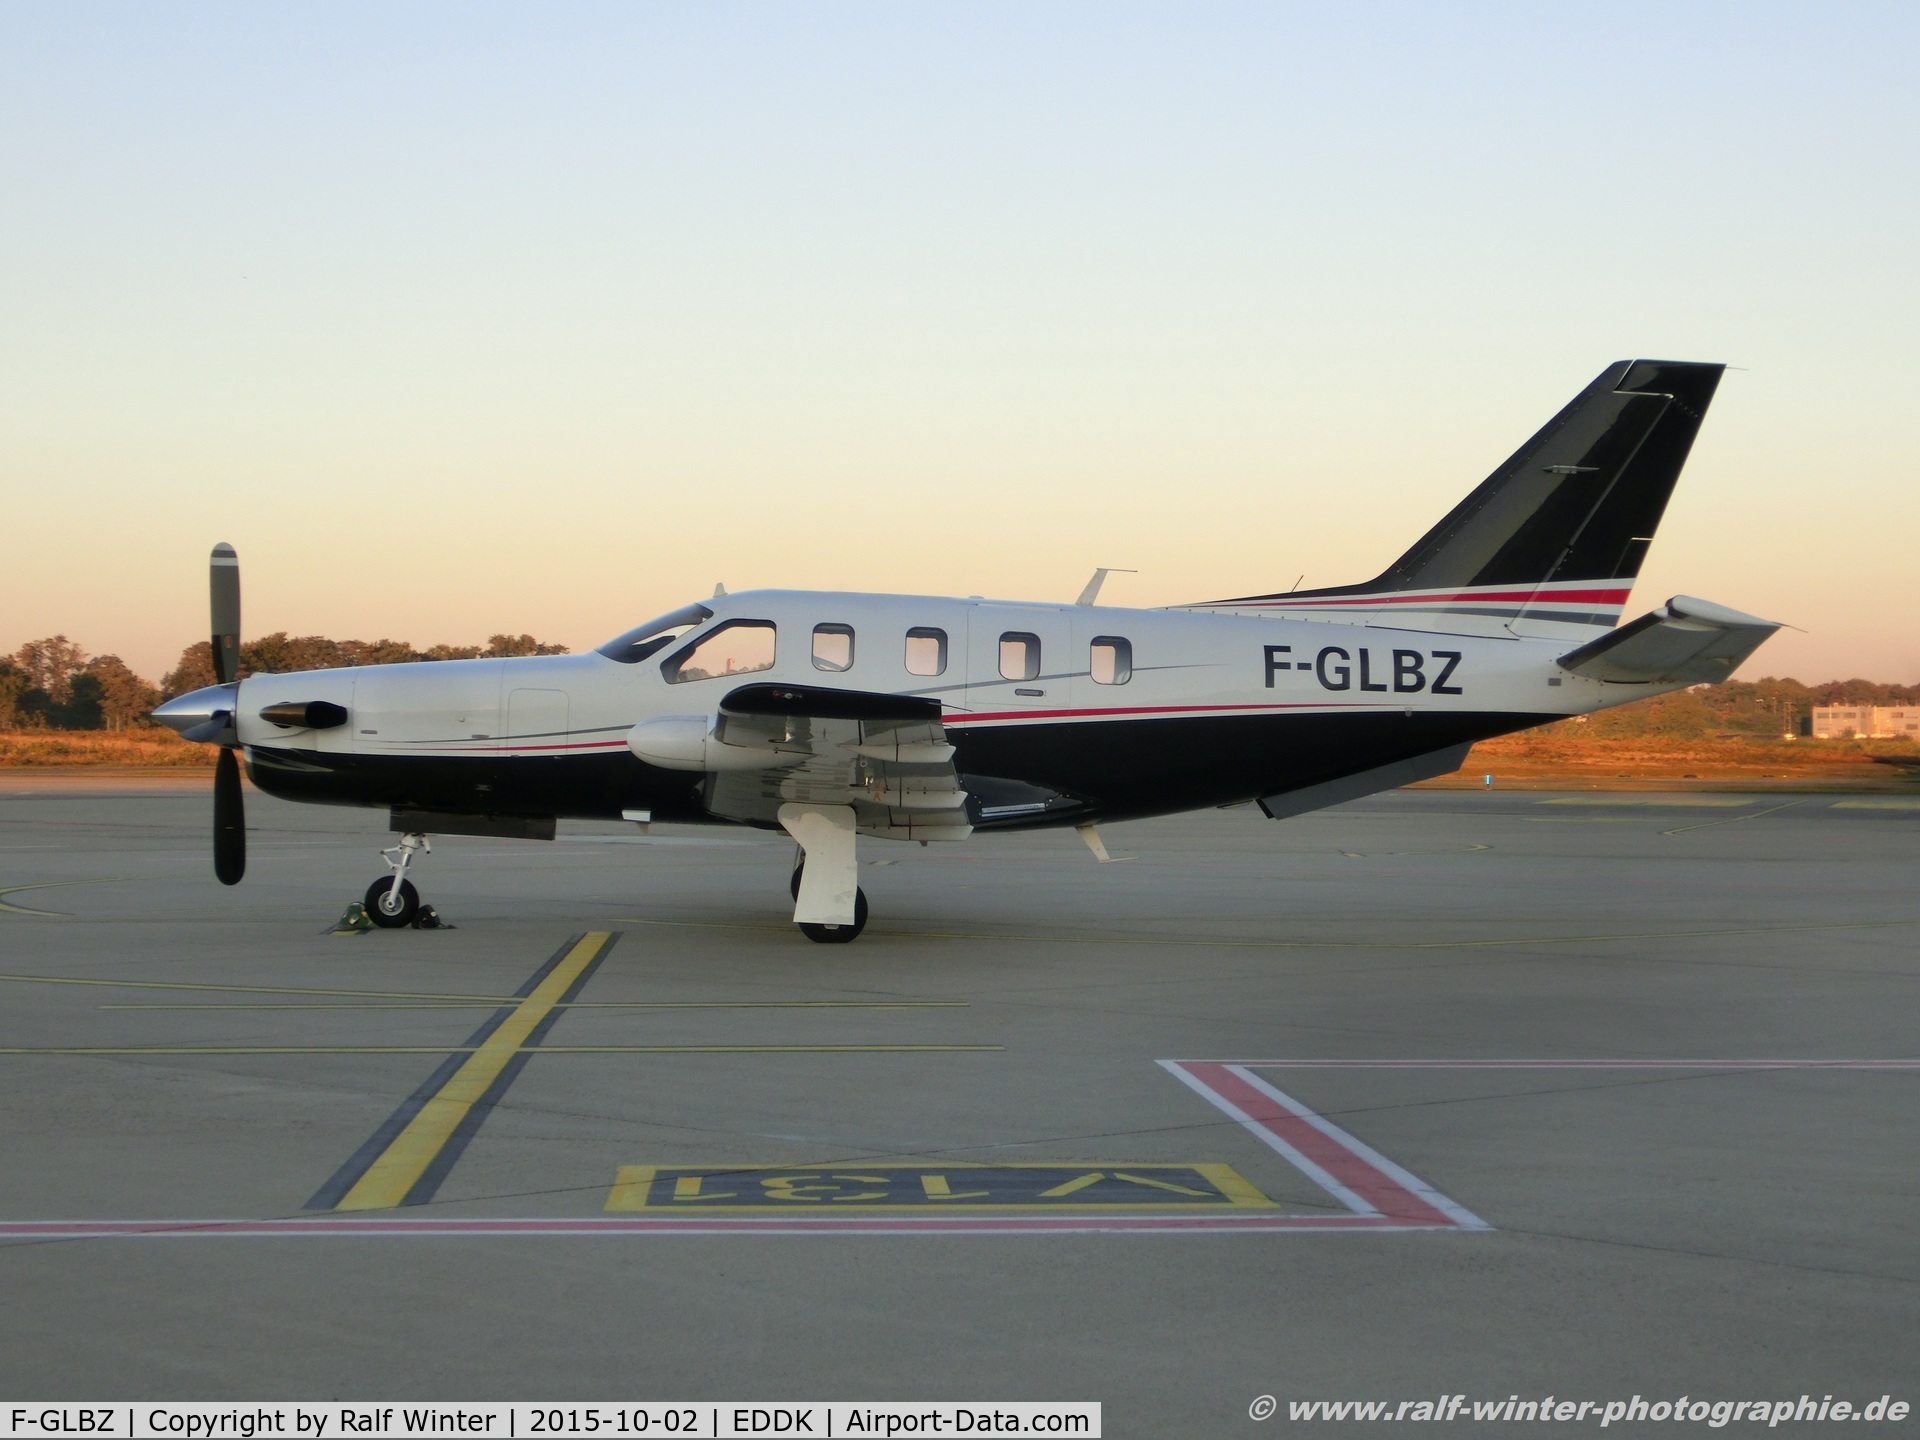 F-GLBZ, 2002 Socata TBM-700 C/N 32, Socata TBM-700 - Socata Aircraft Inc. - 32 - F-GLBZ - 02.10.2015 - CGN